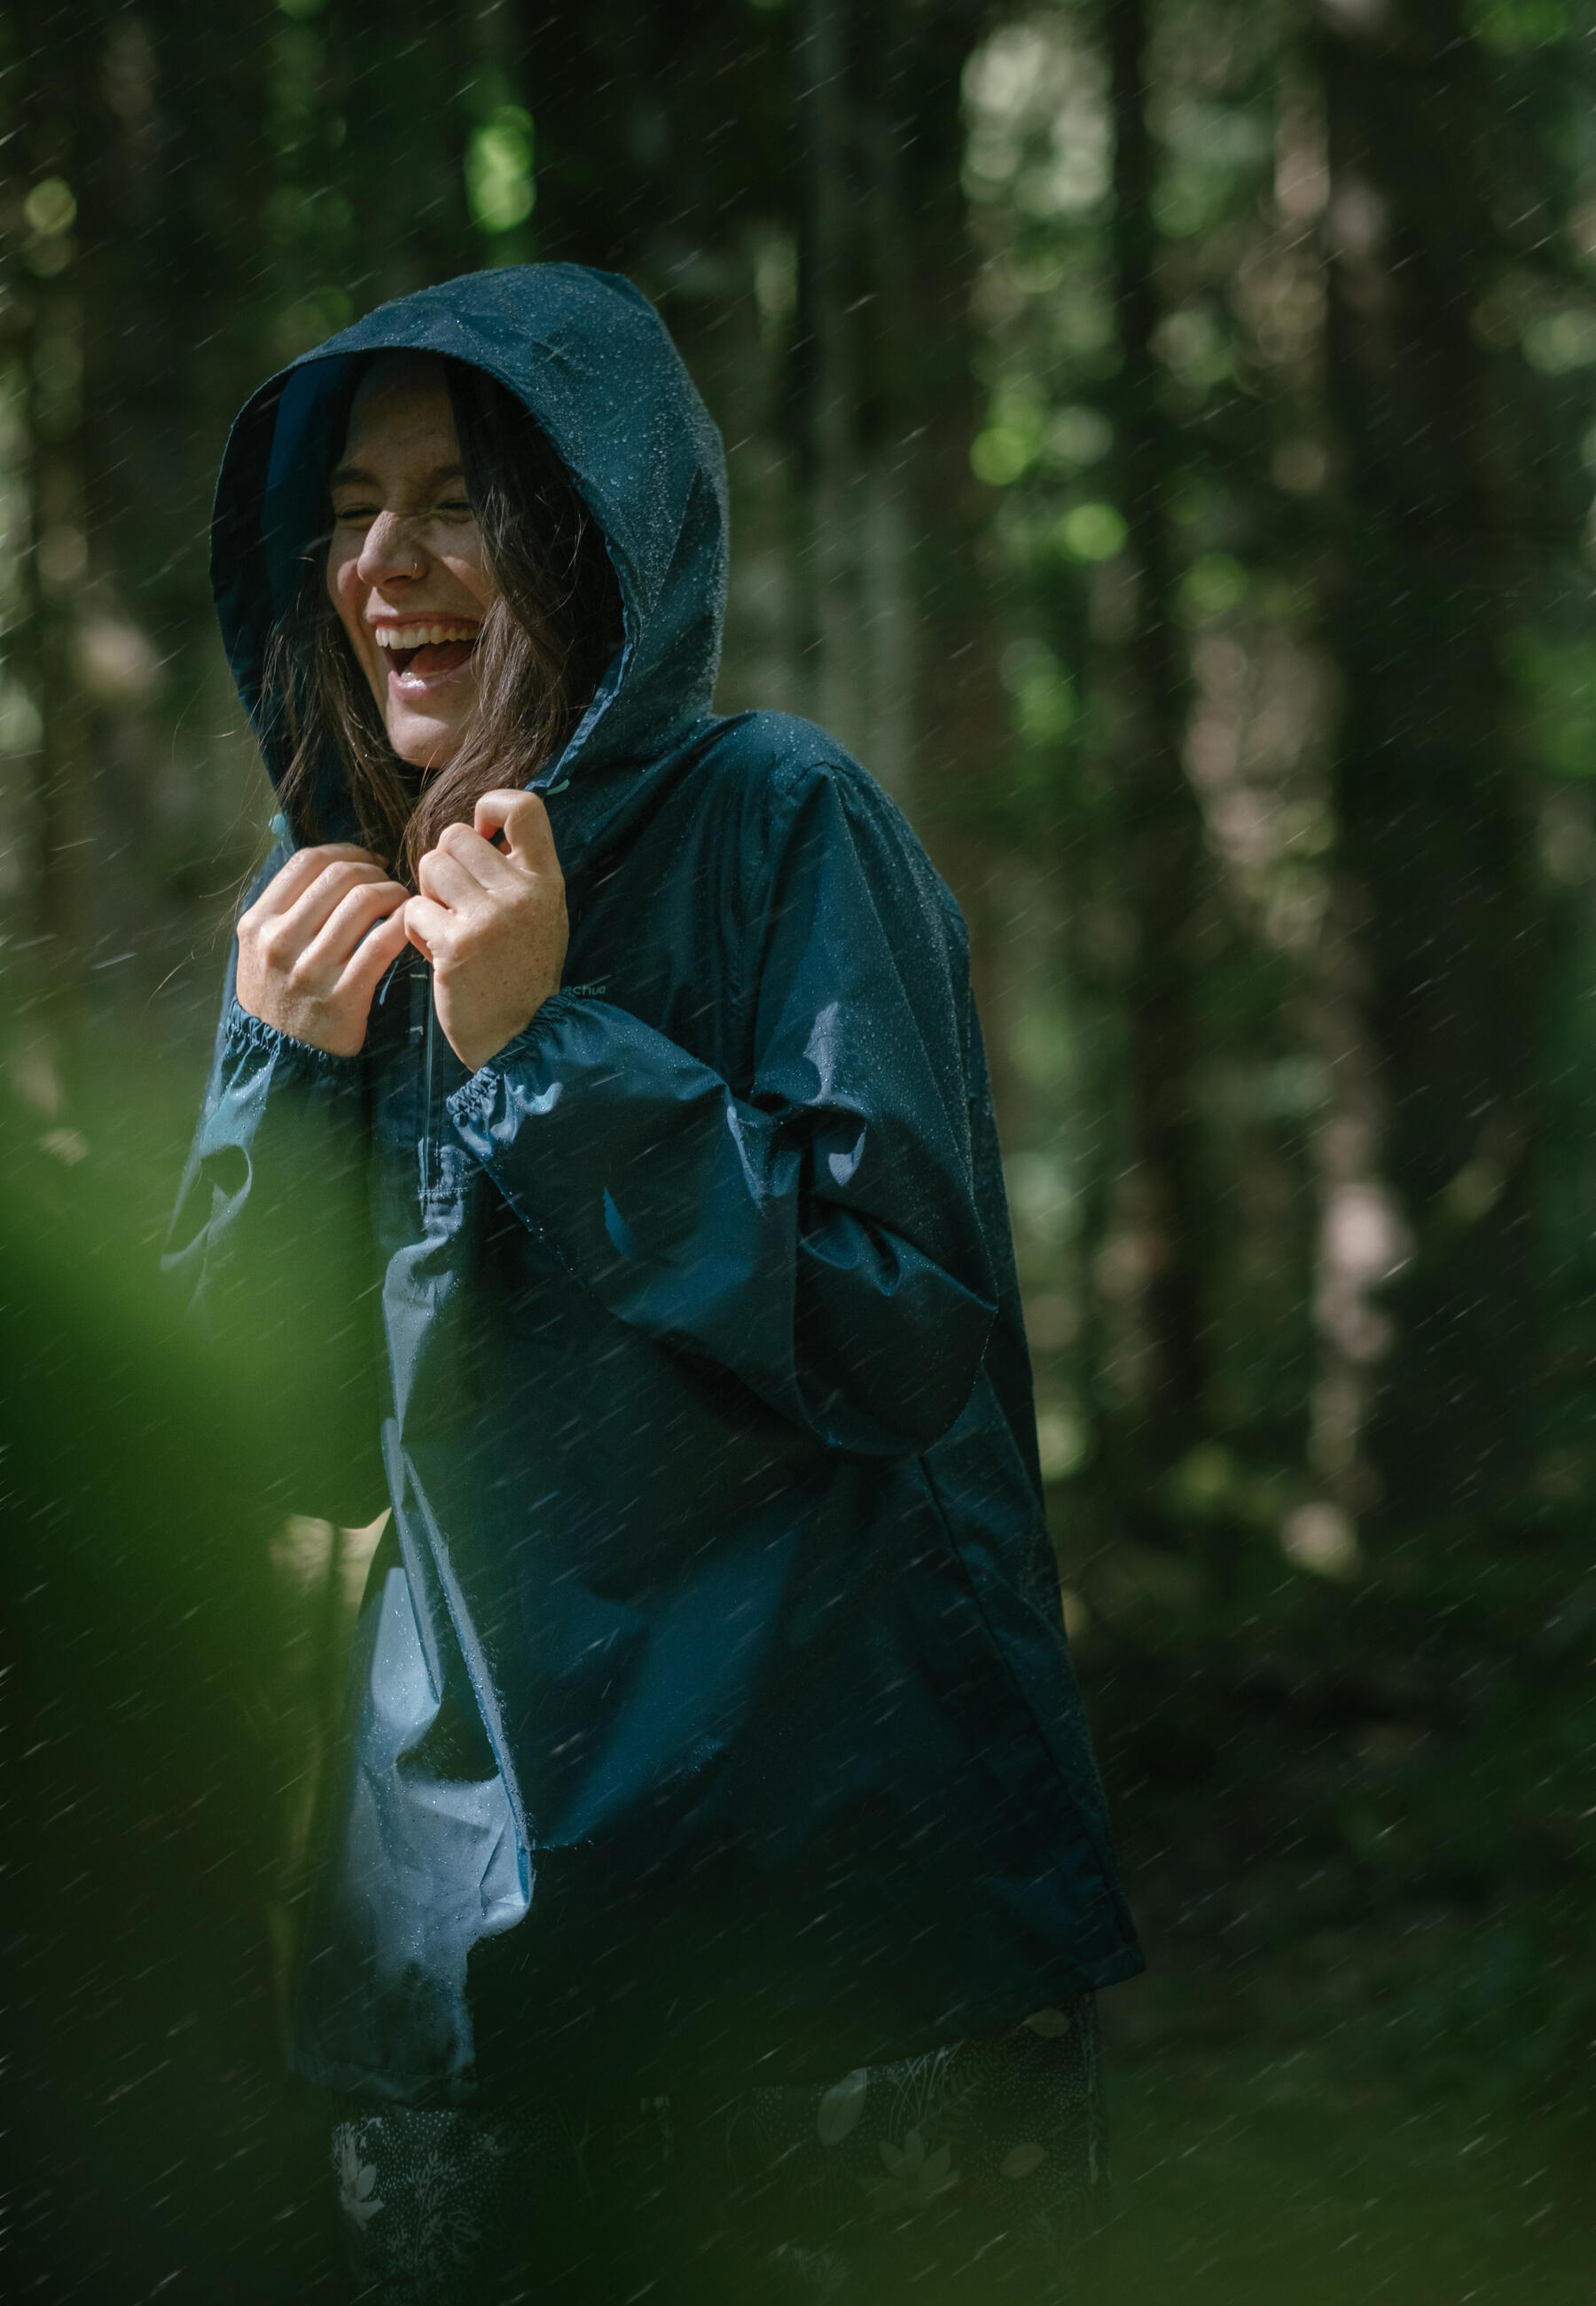 Le camping sous la pluie : conseils pour vous équiper et vous amuser